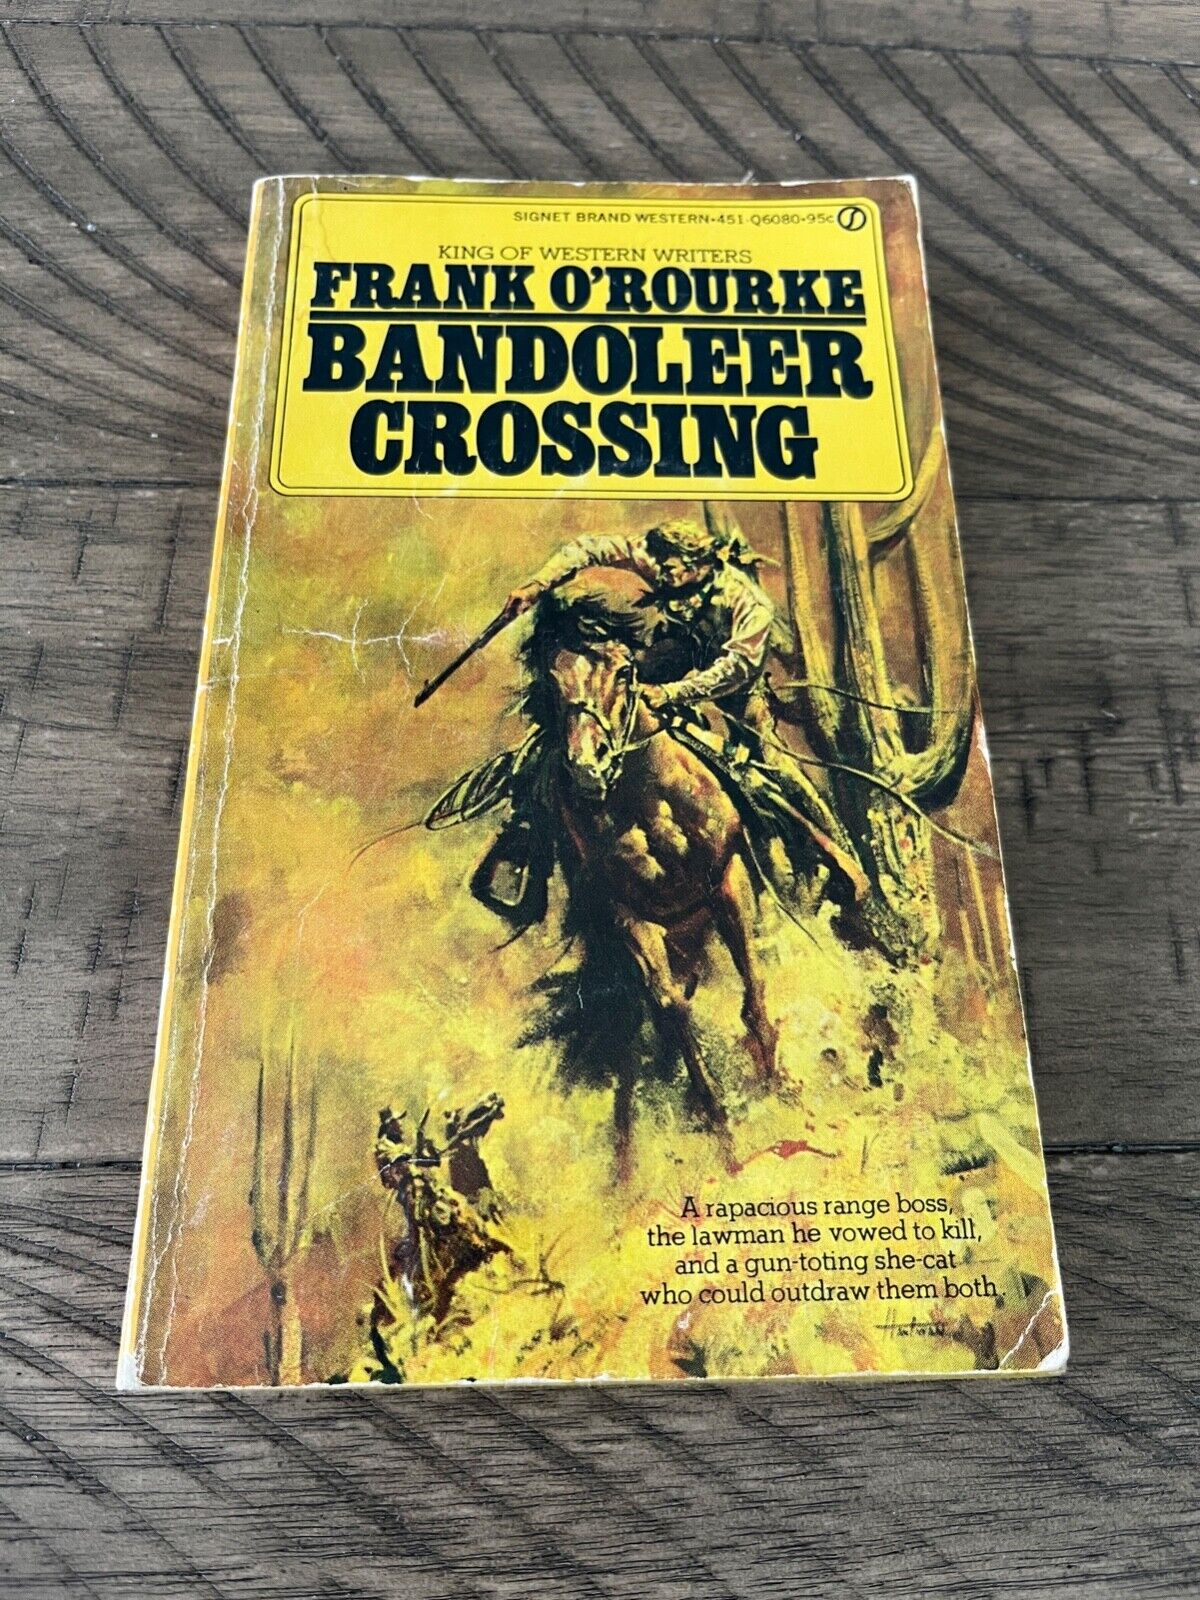 Bandoleer Crossing by Frank O\'Rourke ©1968 1st Signet Printing Vintage Western